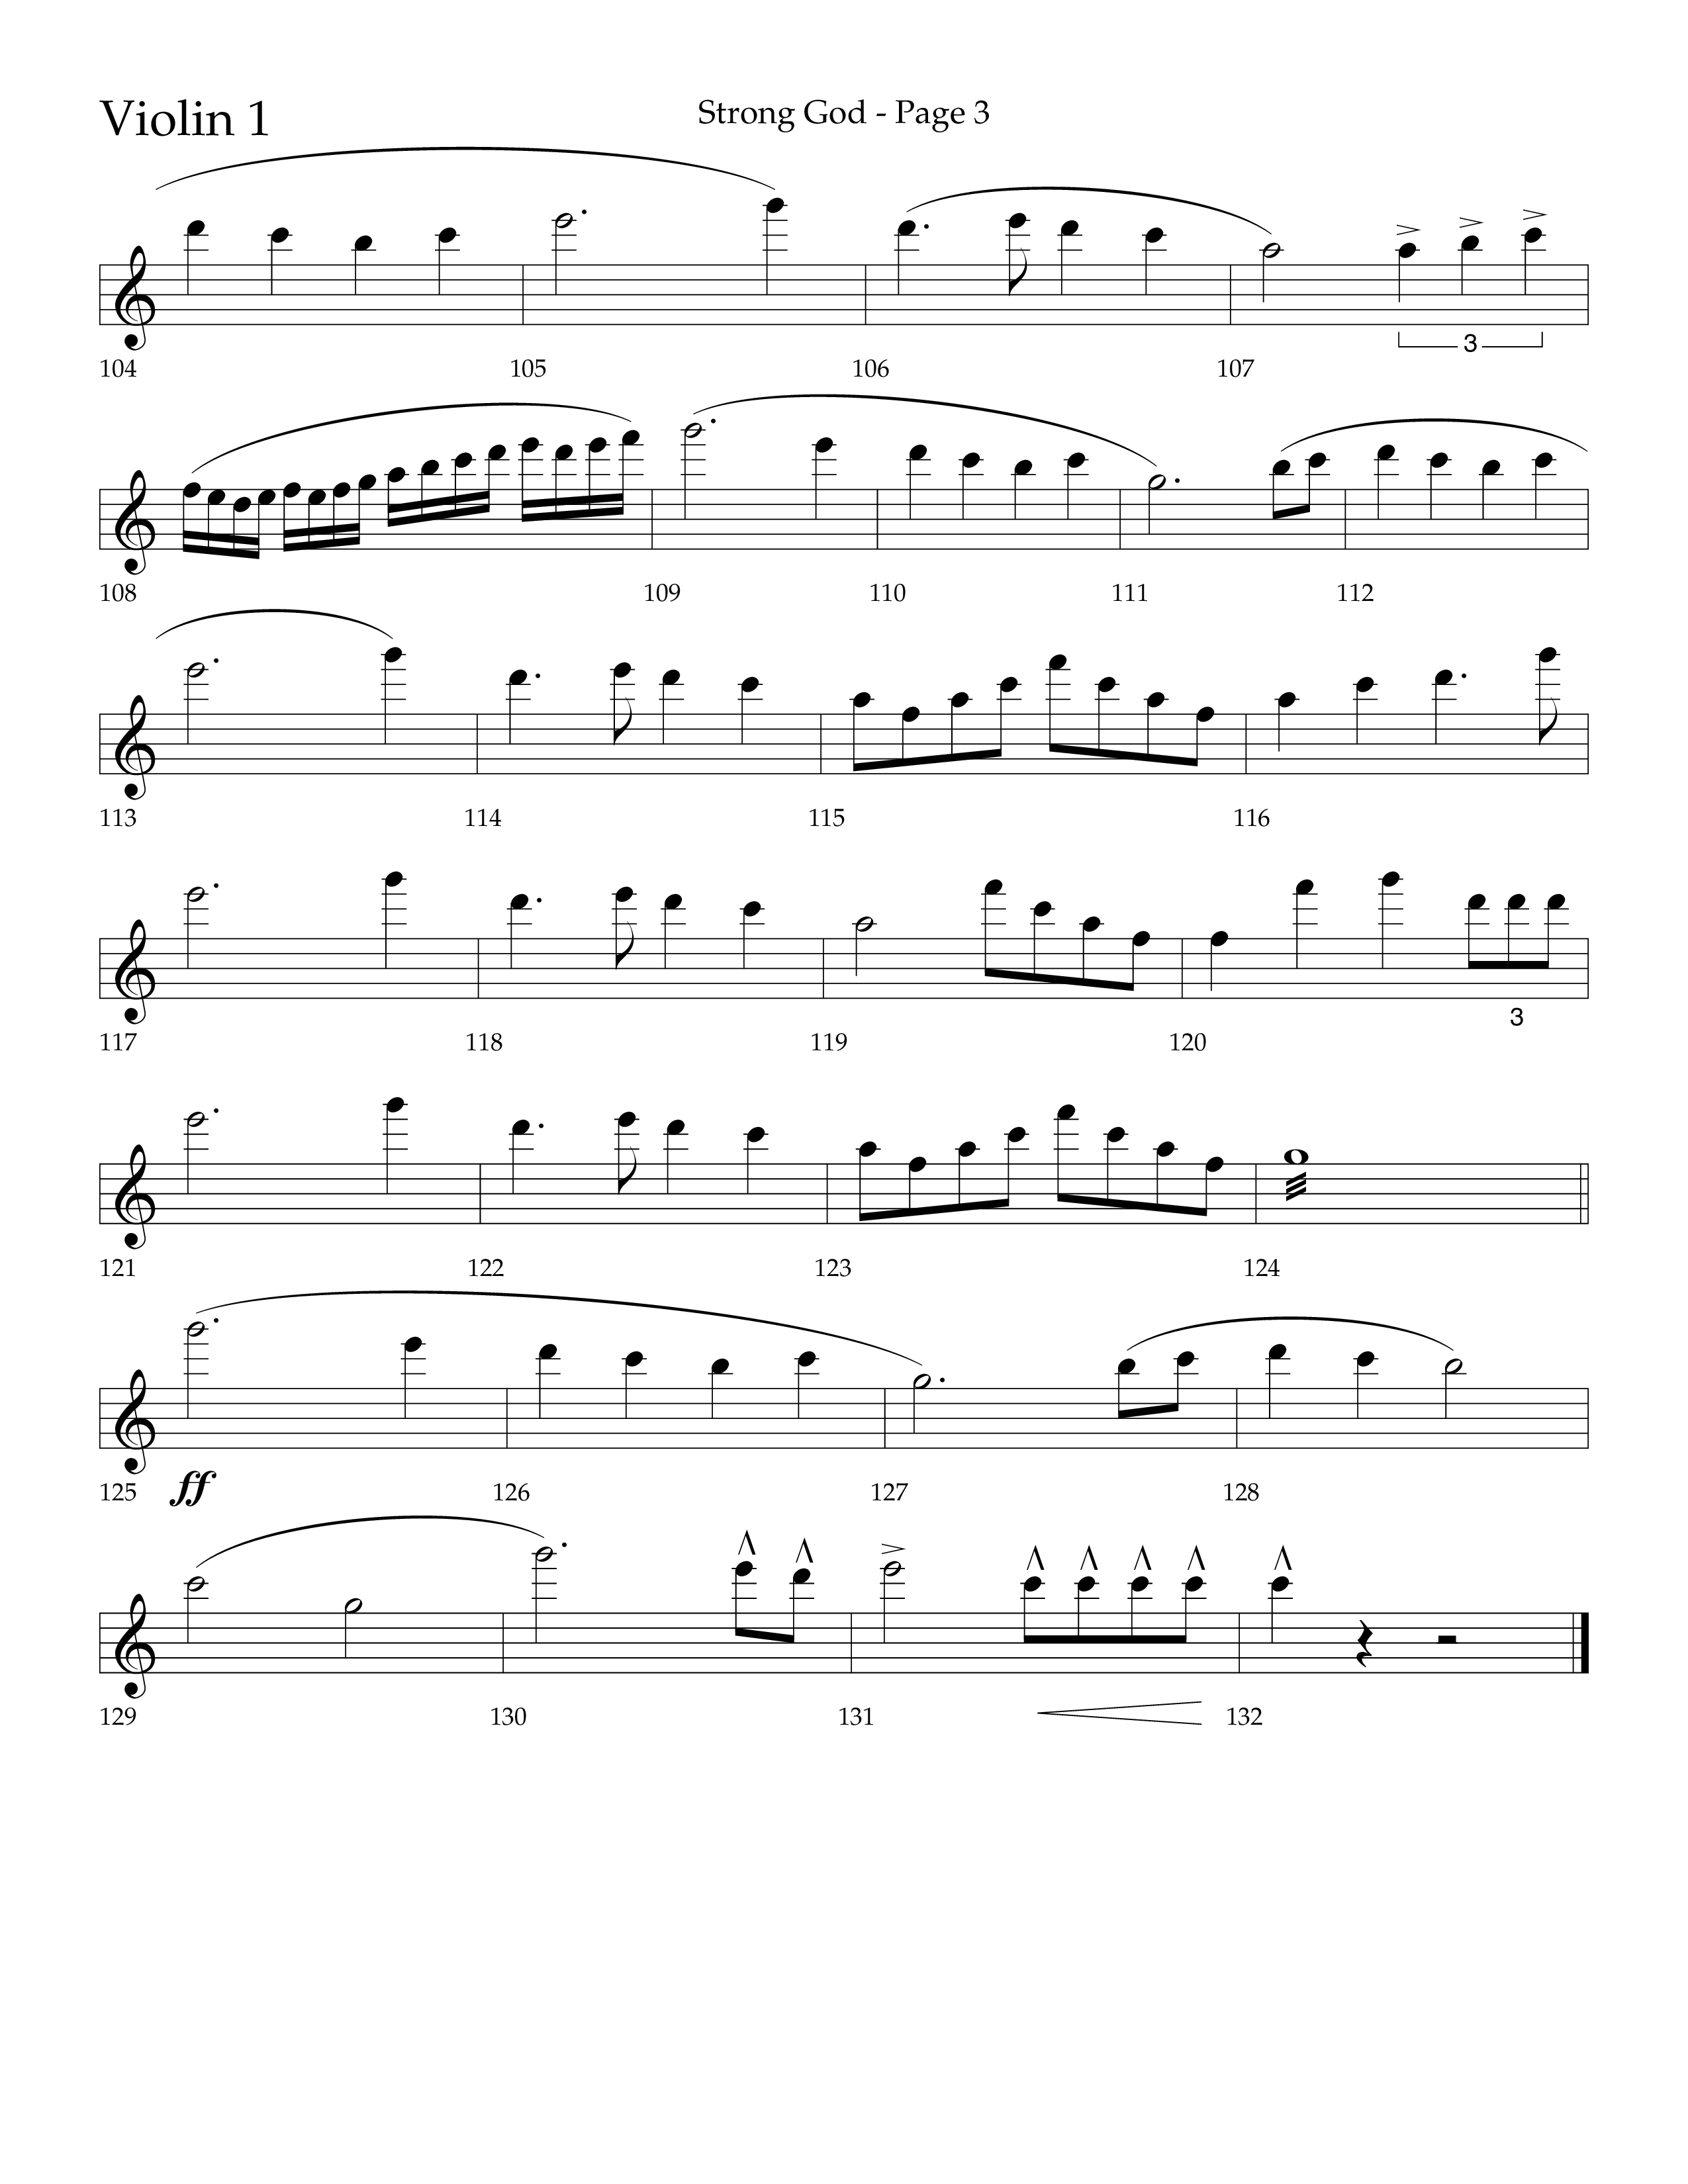 Strong God (Choral Anthem SATB) Violin 1 (Lifeway Choral / Arr. Craig Adams / Arr. Bruce Cokeroft / Orch. Craig Adams)